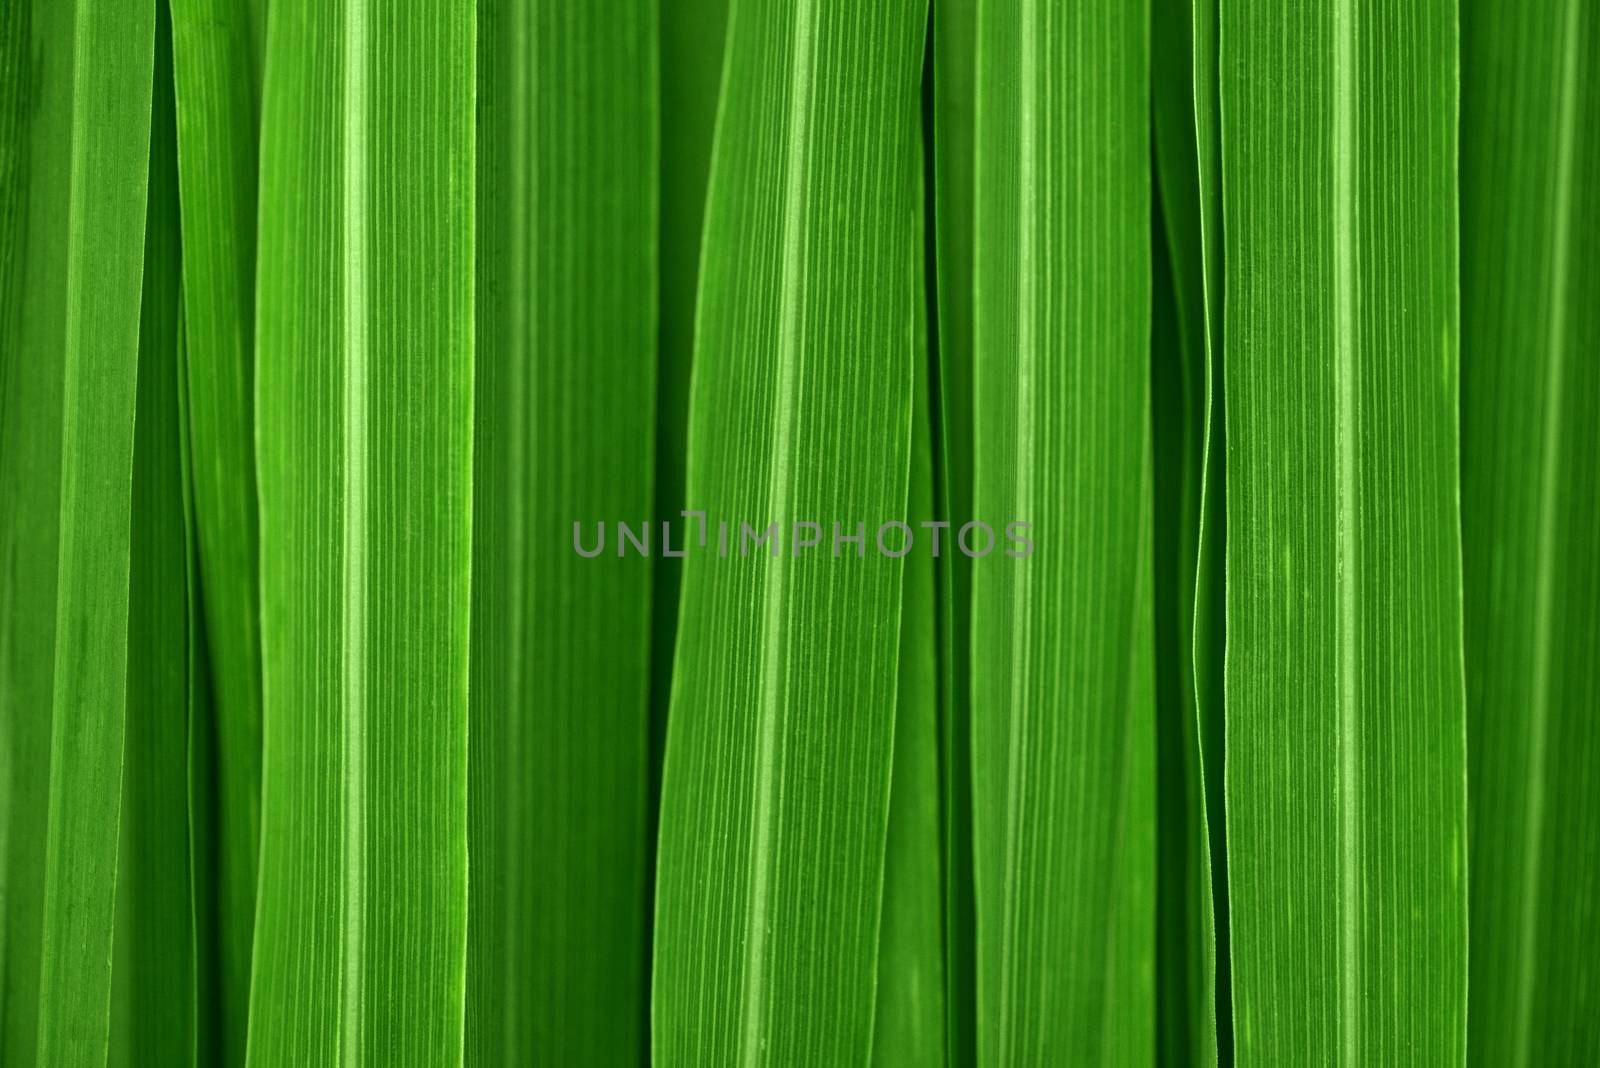 Fresh green lemongrass leaves background full frame.